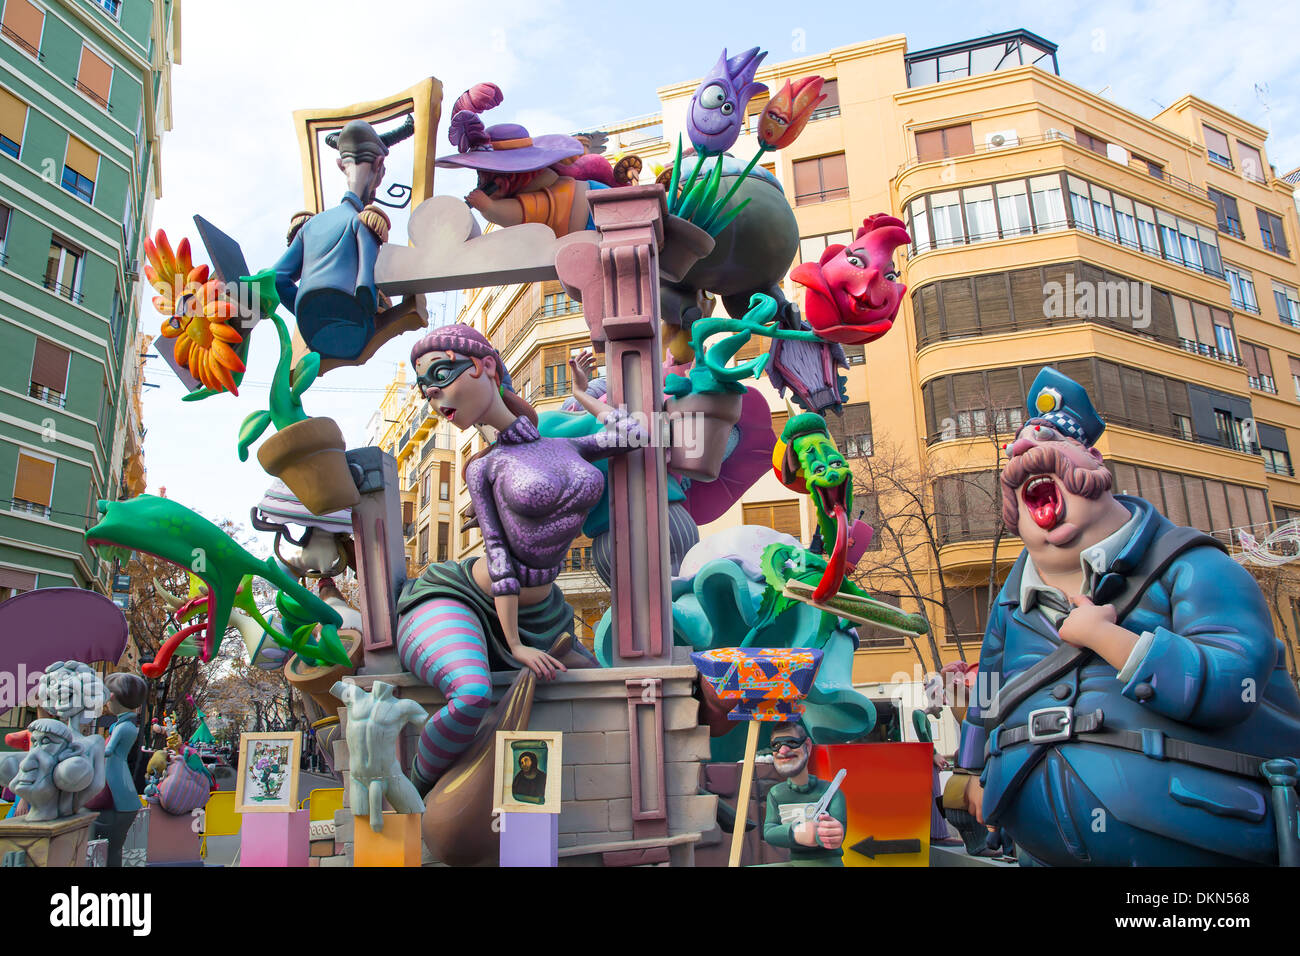 Fallas ist ein beliebtes Fest in Valencia, Spanien mit Figuren, die im März 19 Nacht gebrannt werden Stockfoto